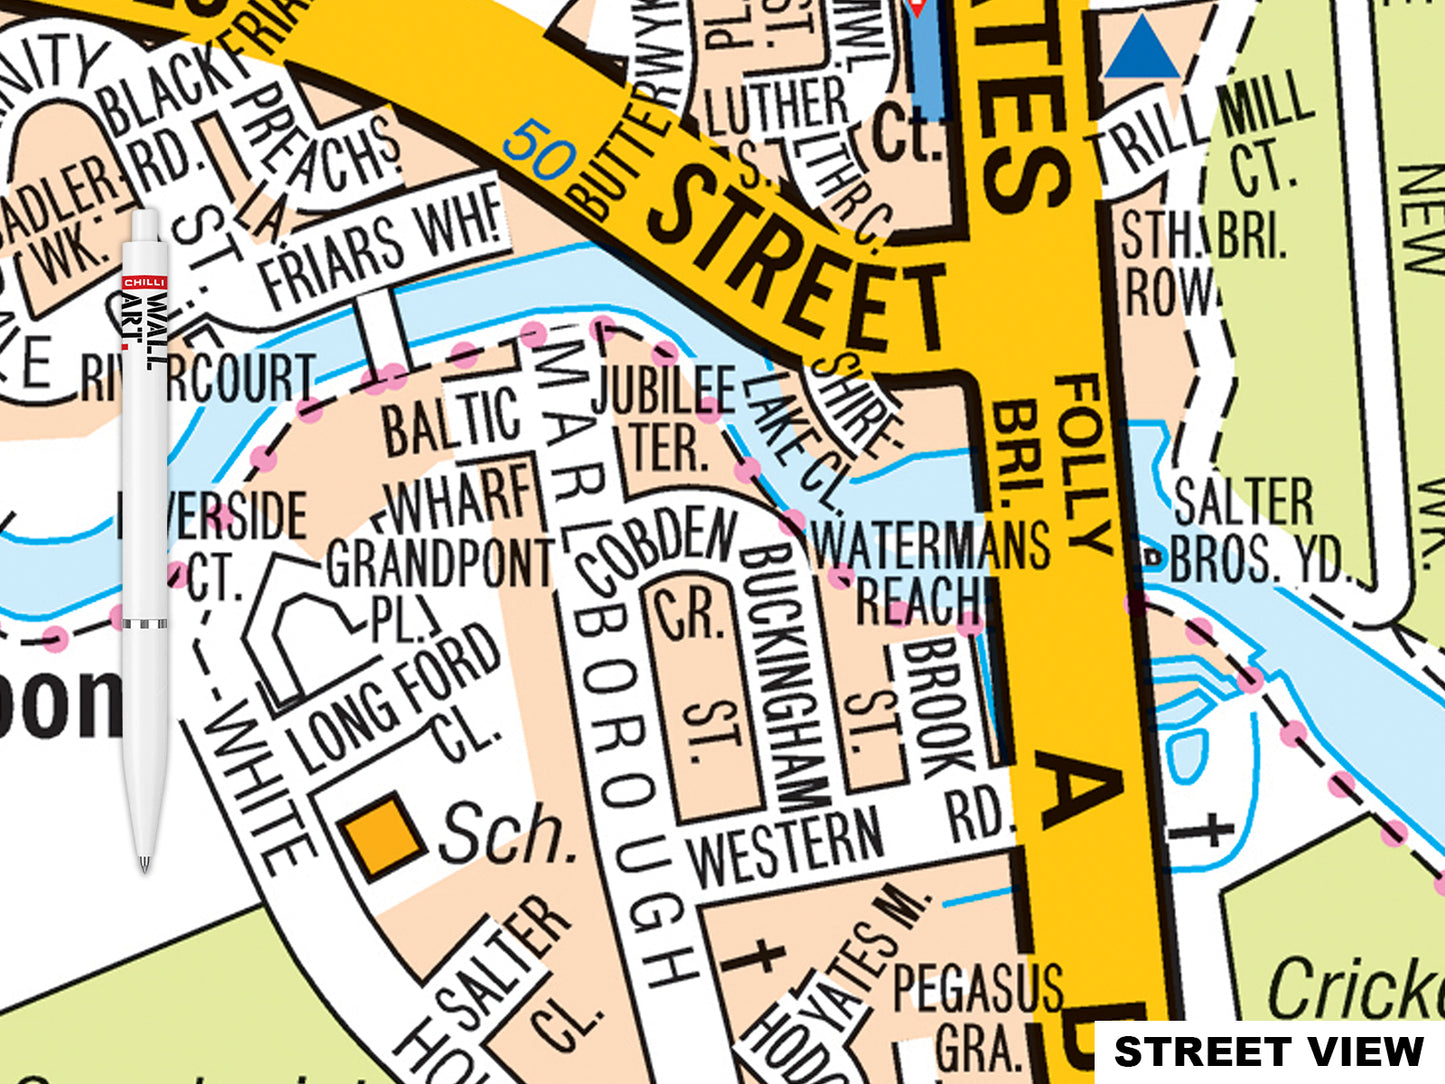 A-Z Oxford Map